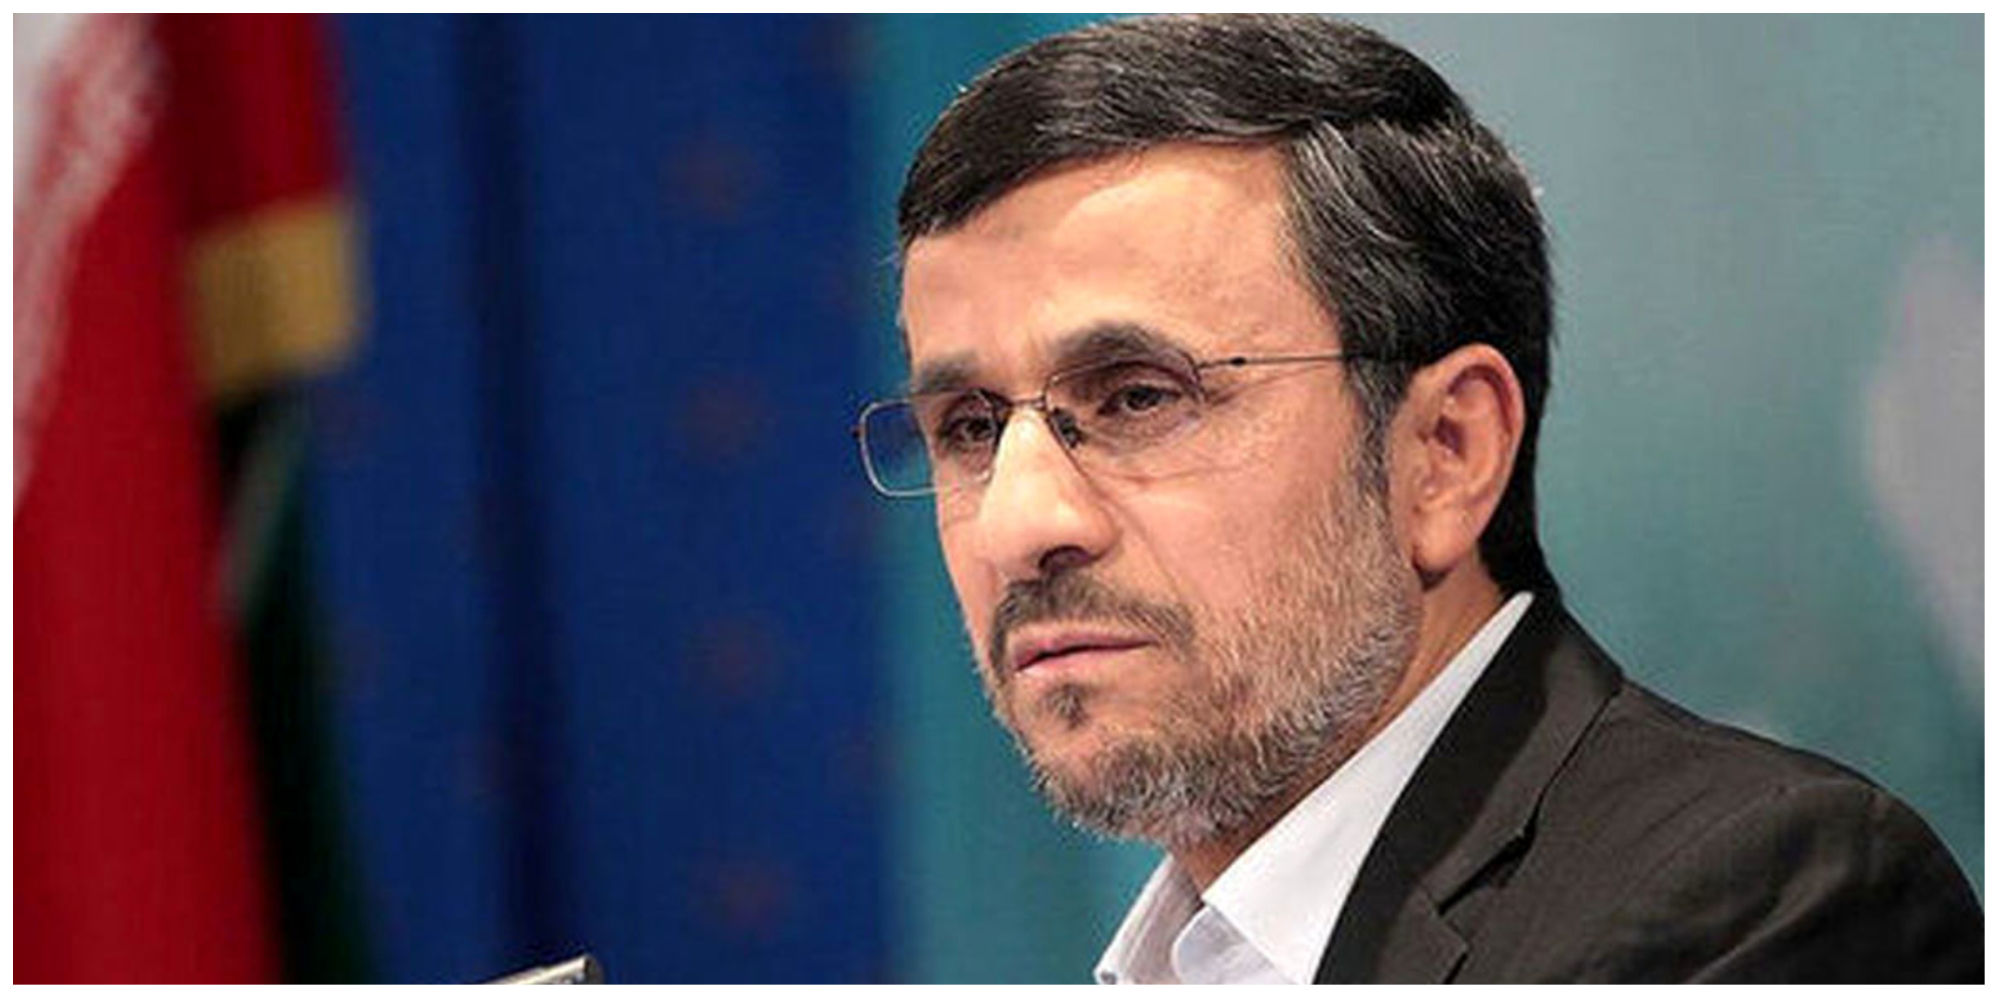 انتخابات ریاست جمهوری احمدی نژاد را به میان طرفداران آورد + عکس